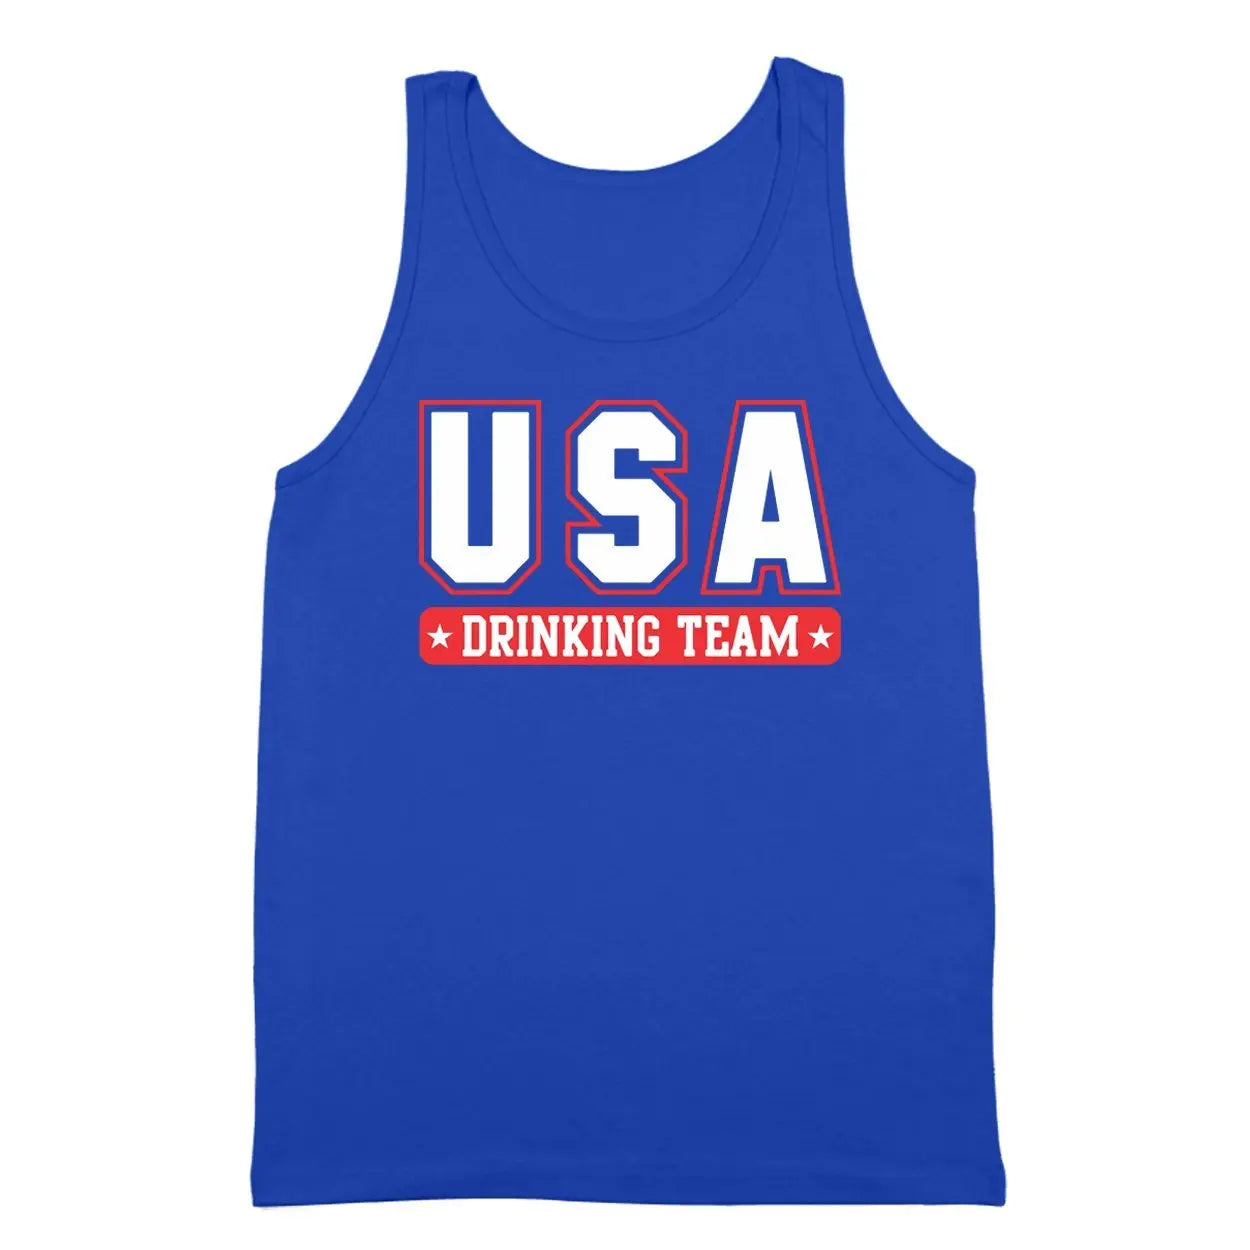 USA Drinking Team Tshirt - Donkey Tees